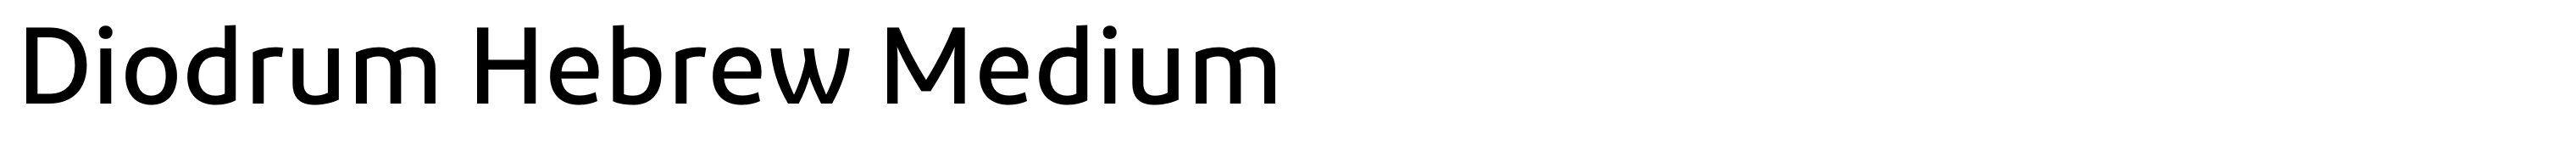 Diodrum Hebrew Medium